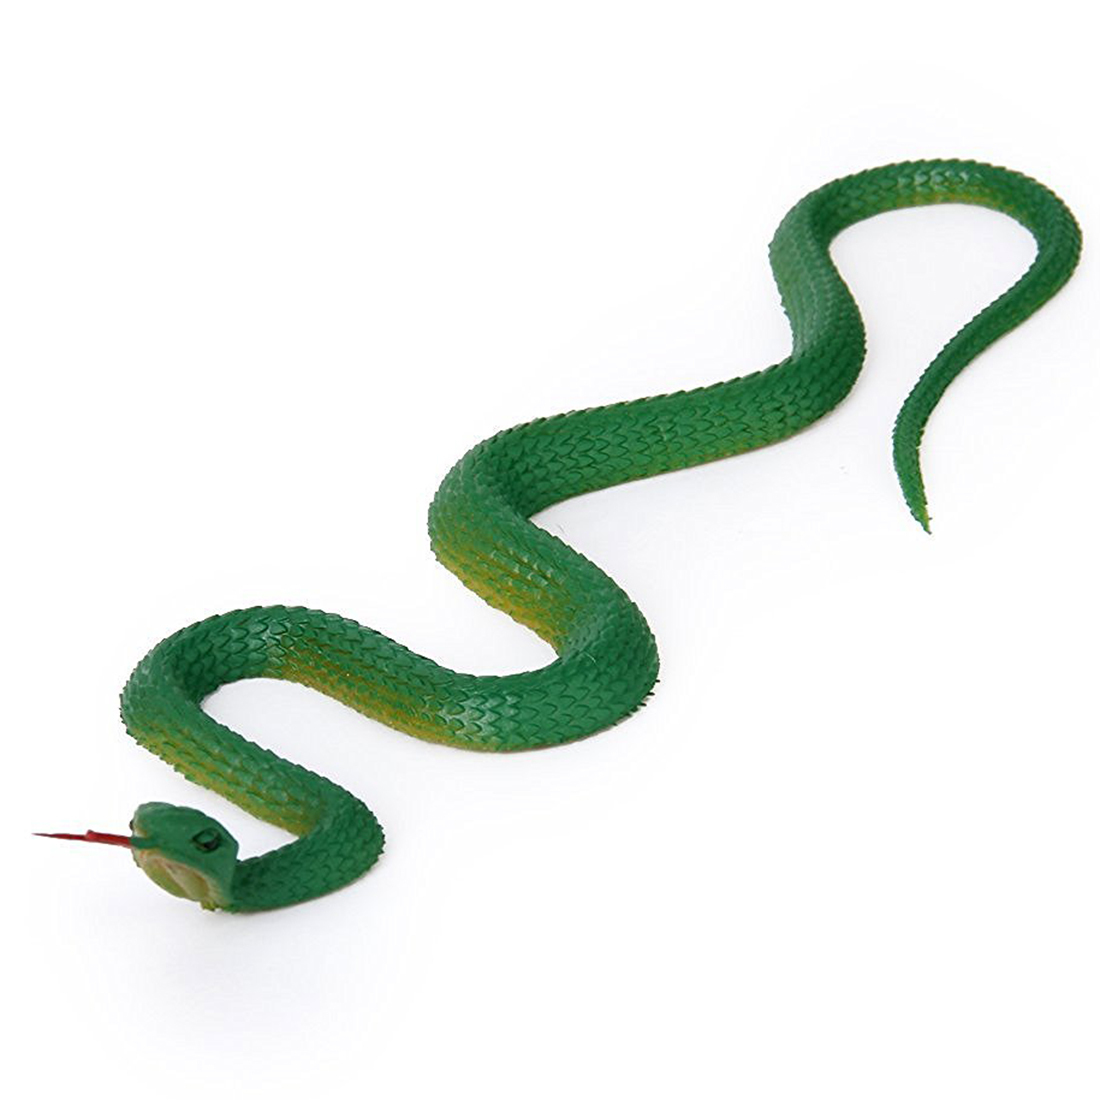 Тонкая змейка. Резиновая змея гадюка. Питон резиновая змея. Резиновая змея игрушка. Пластиковая игрушка змея.